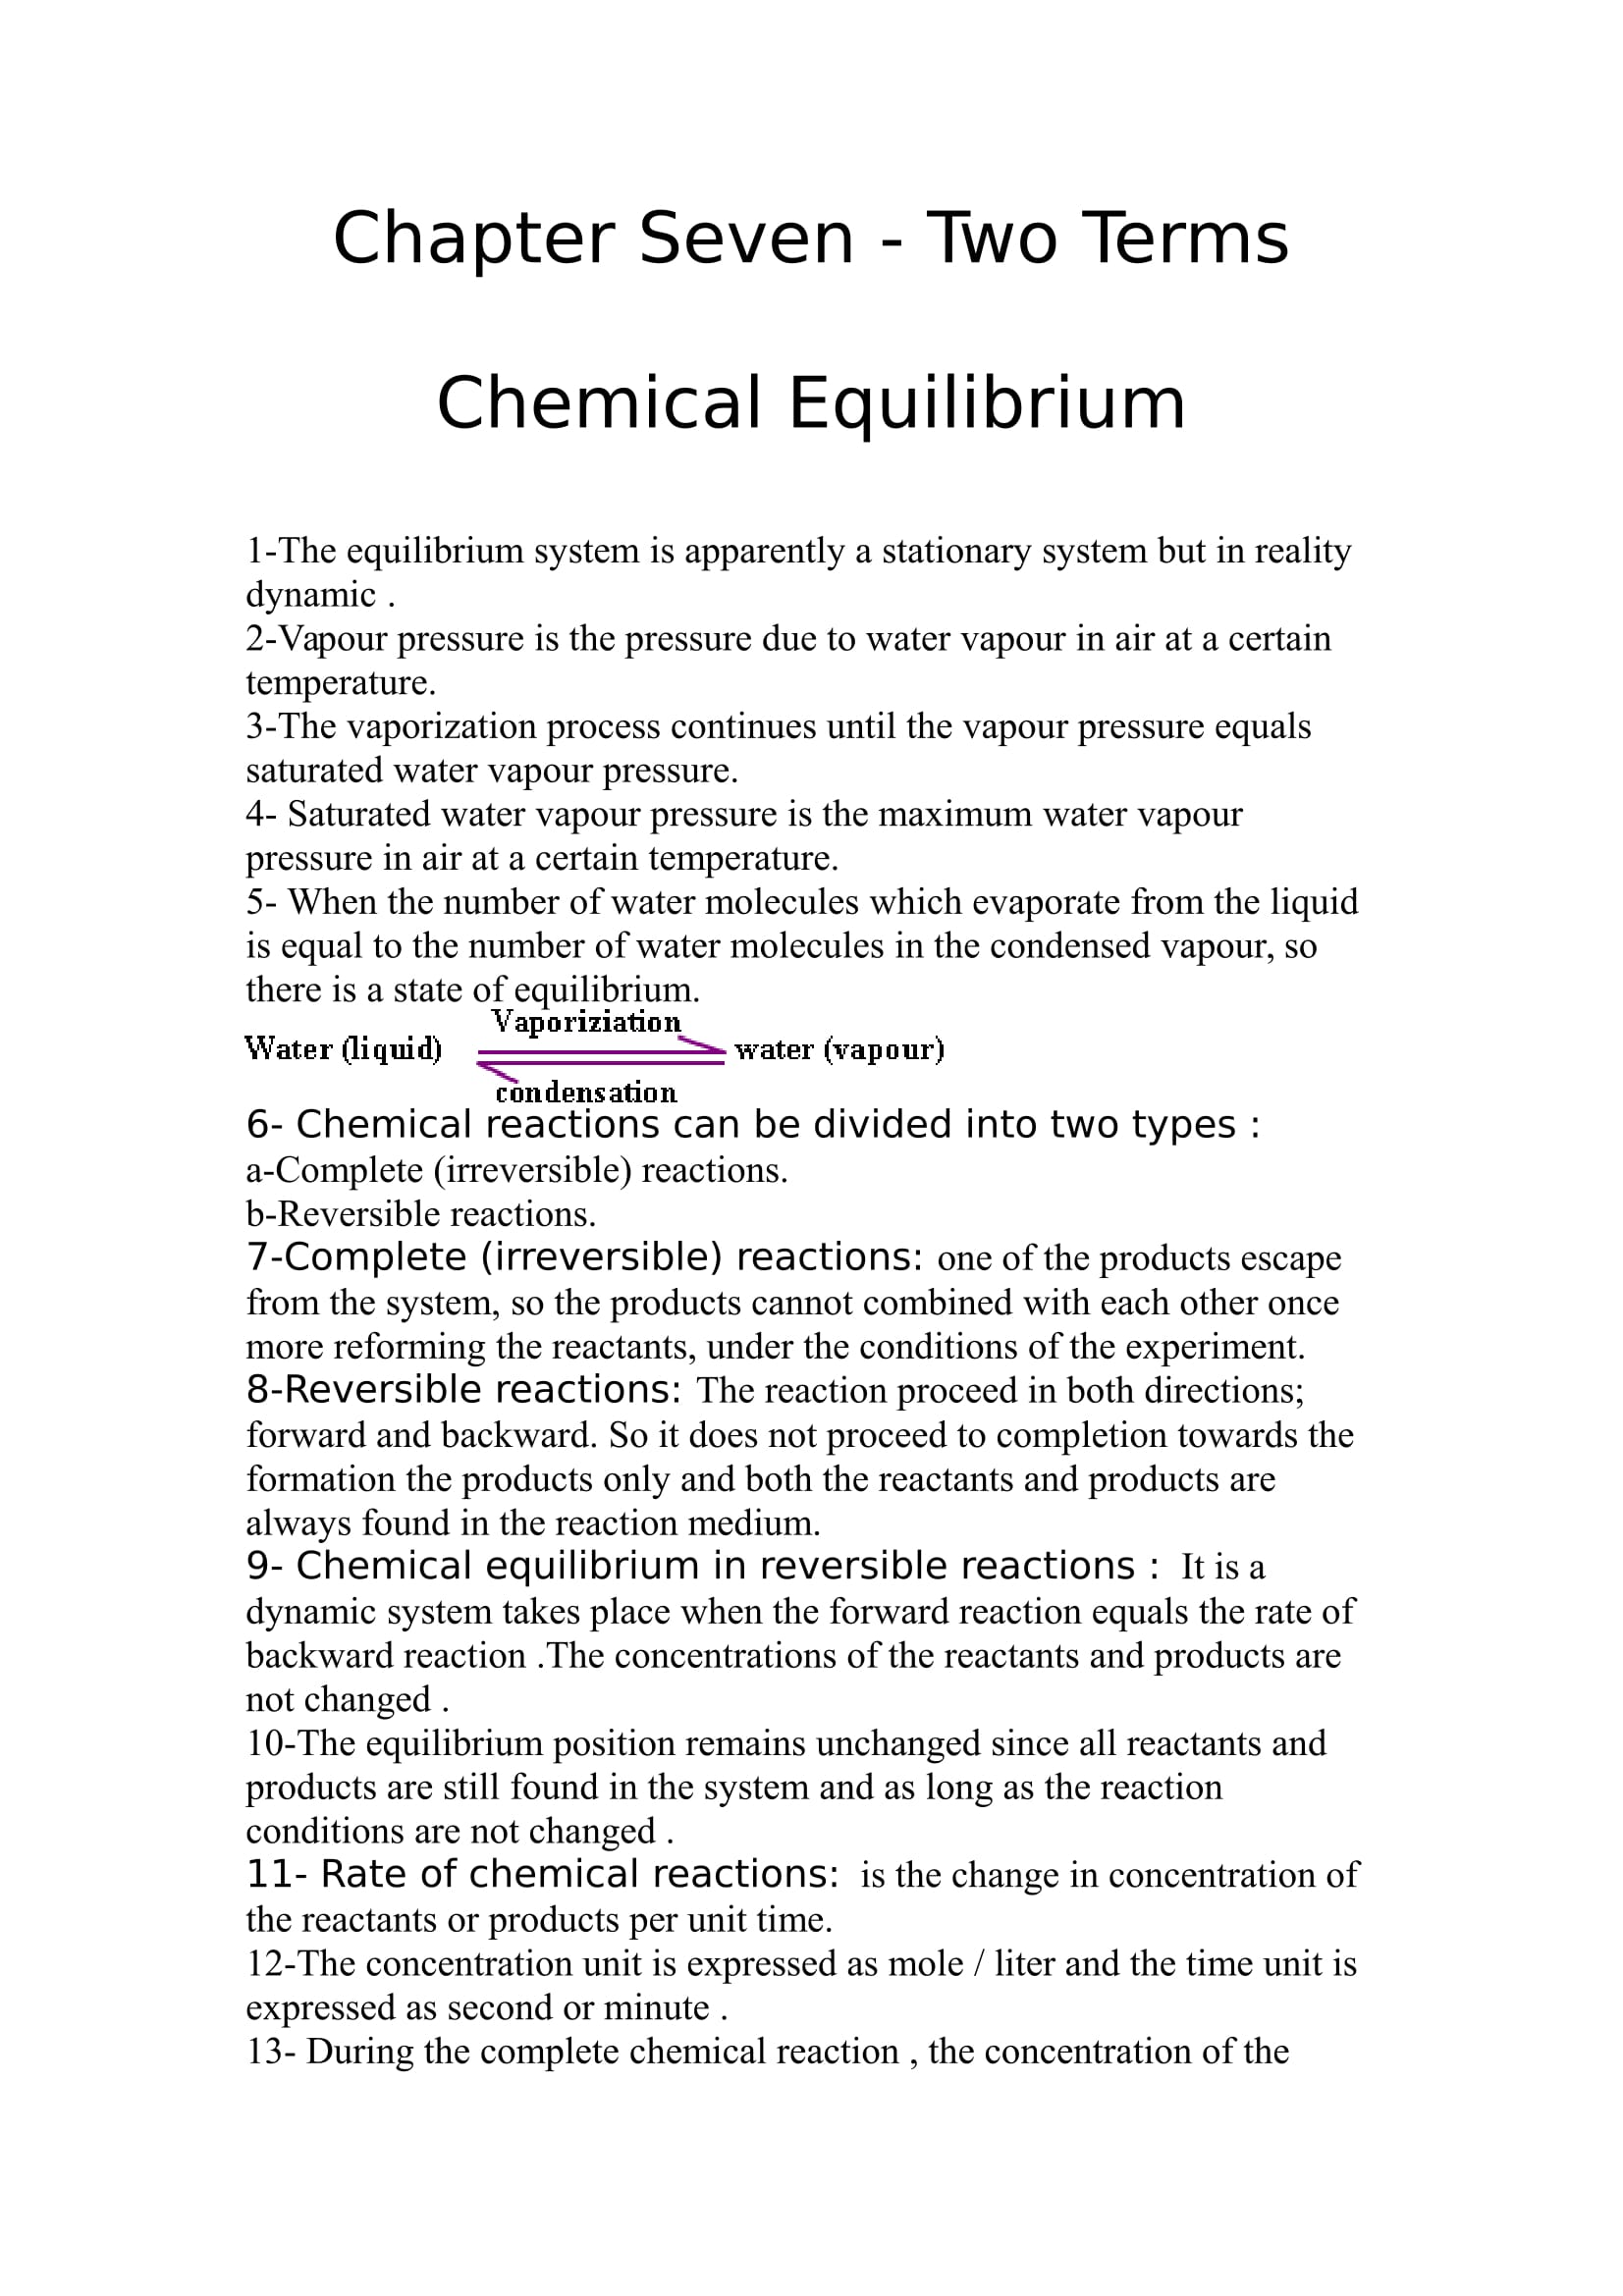 شرح وافى ل Chapter 7 فى Chemistry للصف الثالث الثانوى اللغات